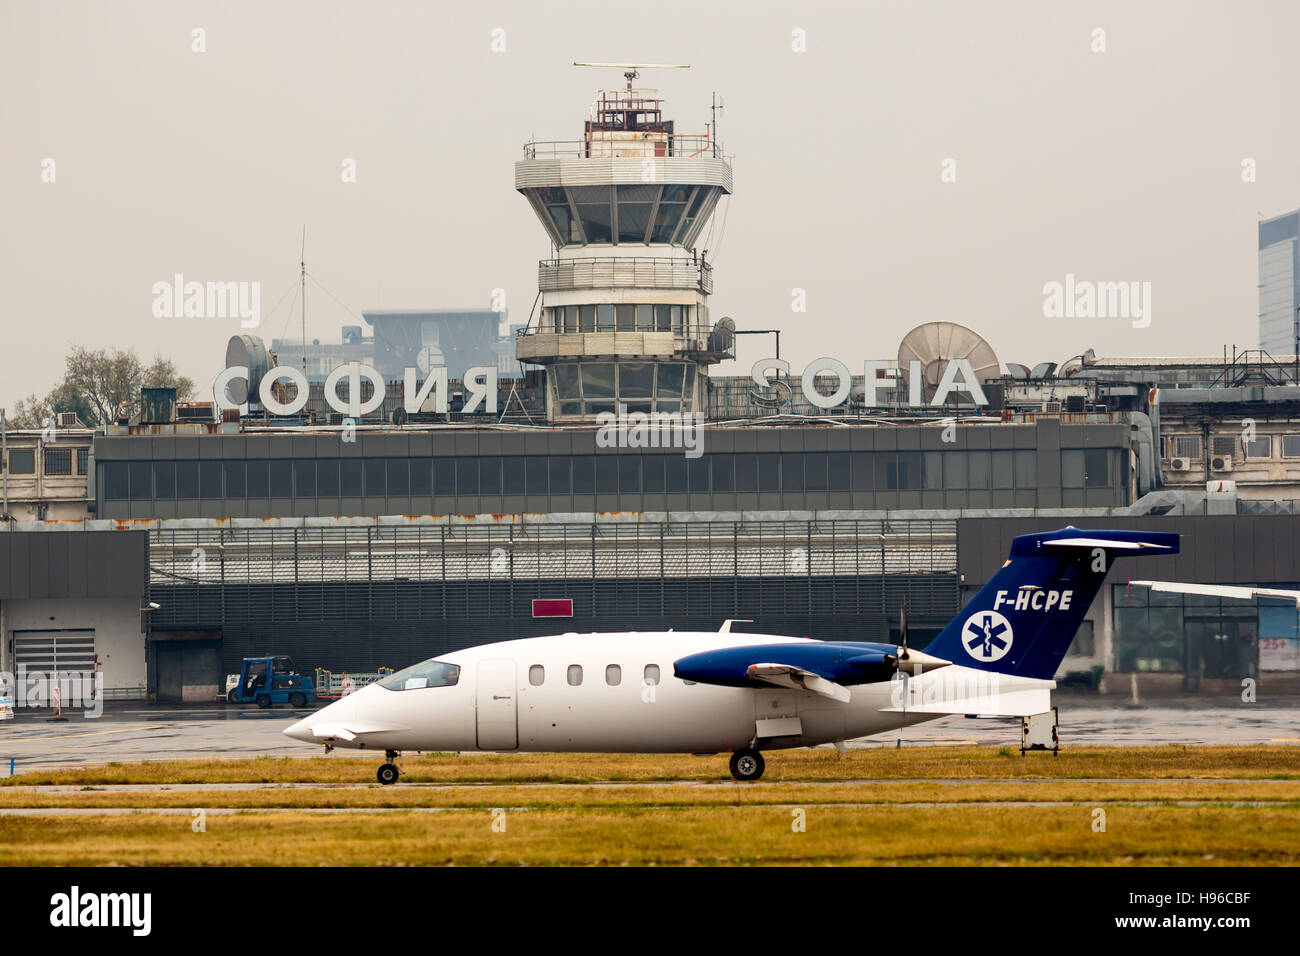 Sofia, Bulgarien - 16. Oktober 2016: Eine kleine private Propeller Flugzeug Sekunden vor dem Flug zu den Start-und Landebahn am Flughafen Sofia. Stockfoto